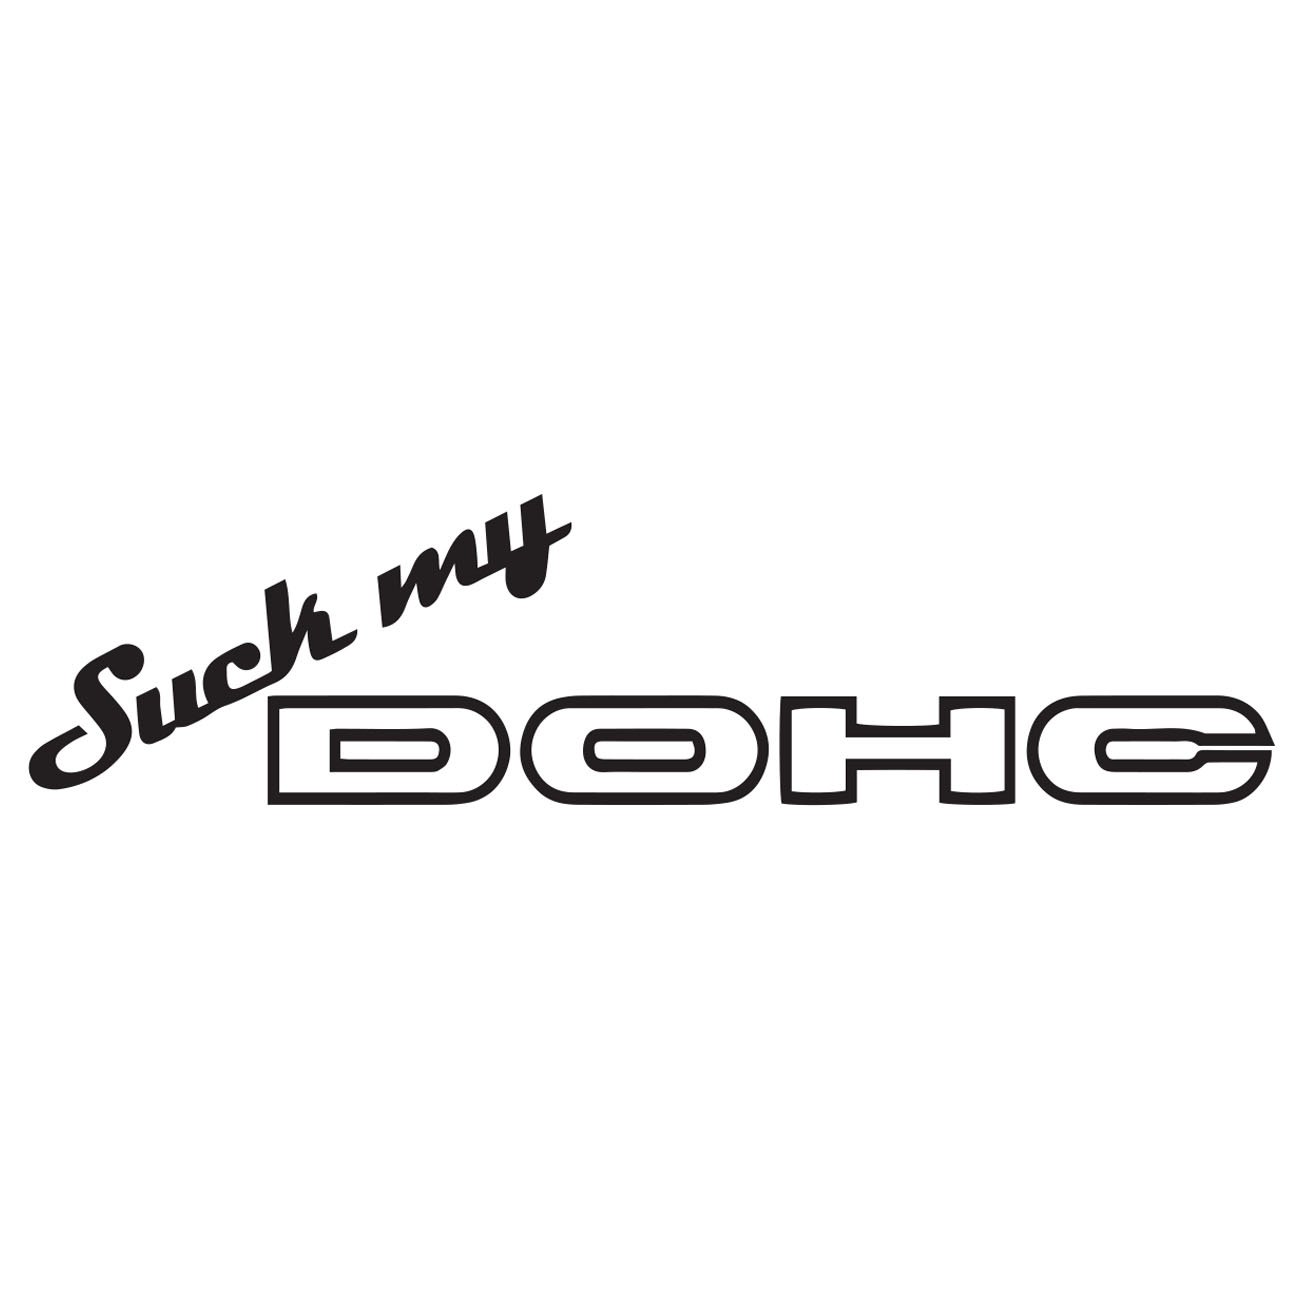 Suck my dohc